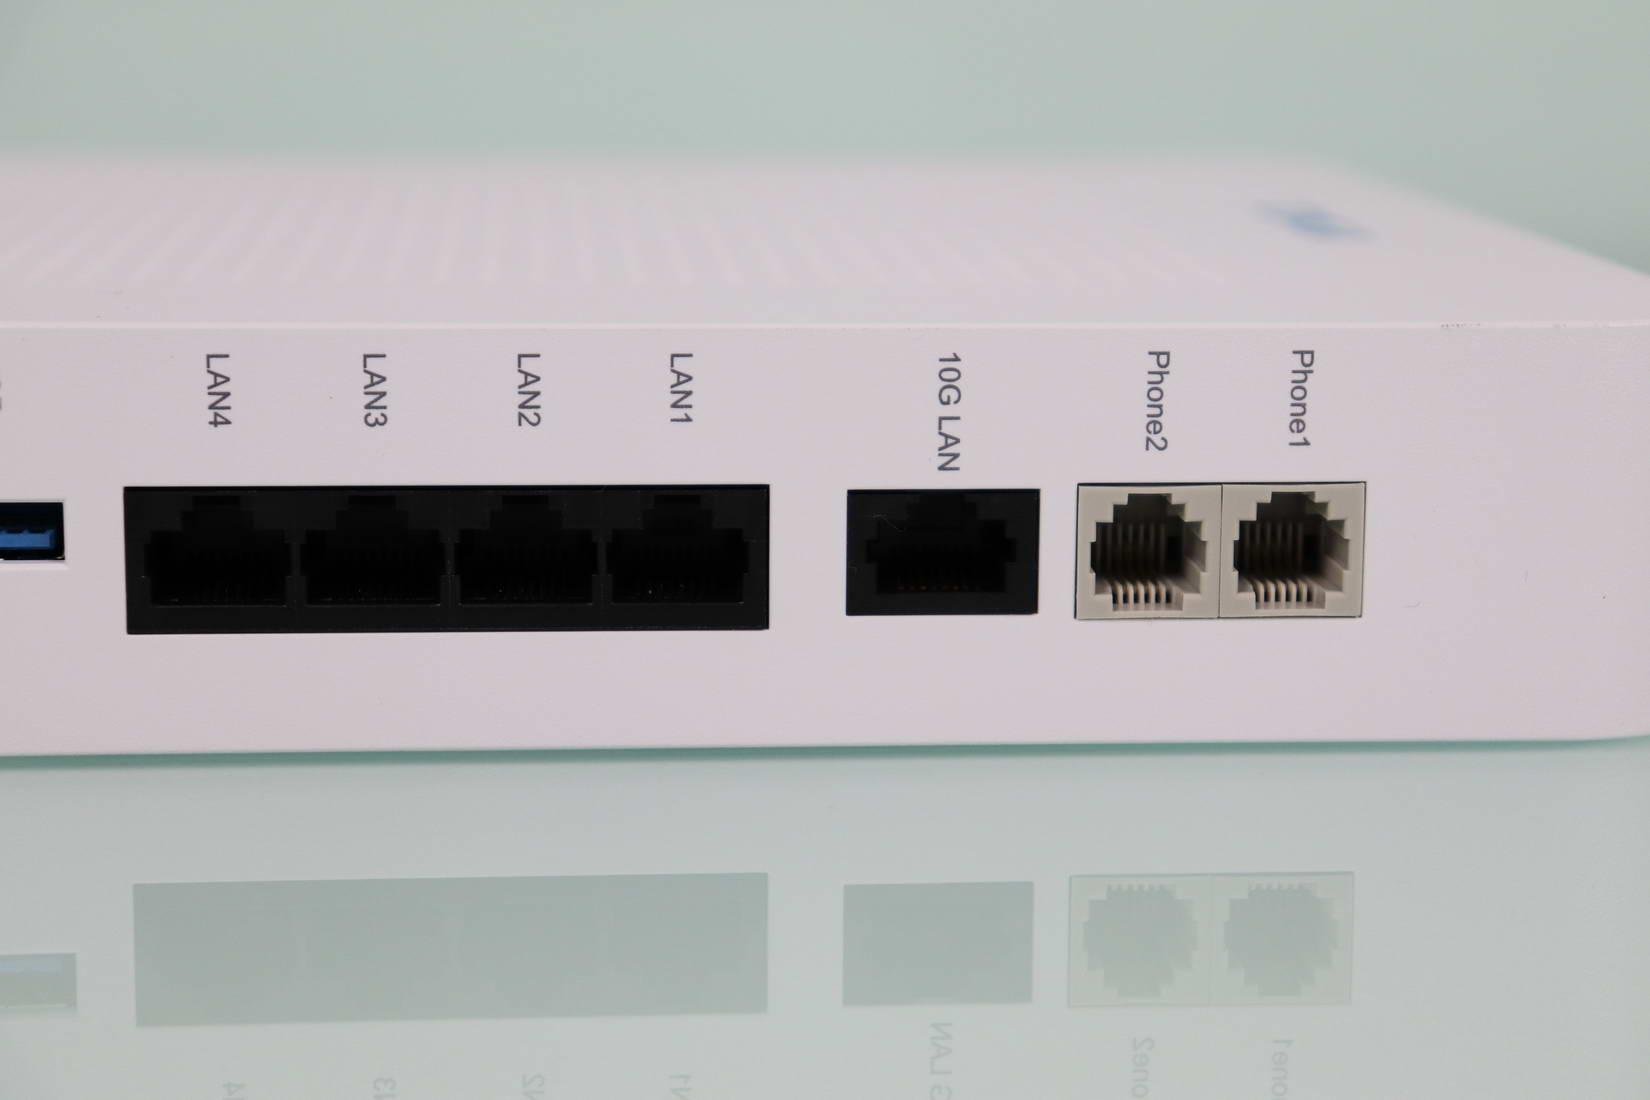 Vista de los puertos Gigabit Ethernet, 10Gbps y RJ-11 del router ZTE ZXHN F8648P